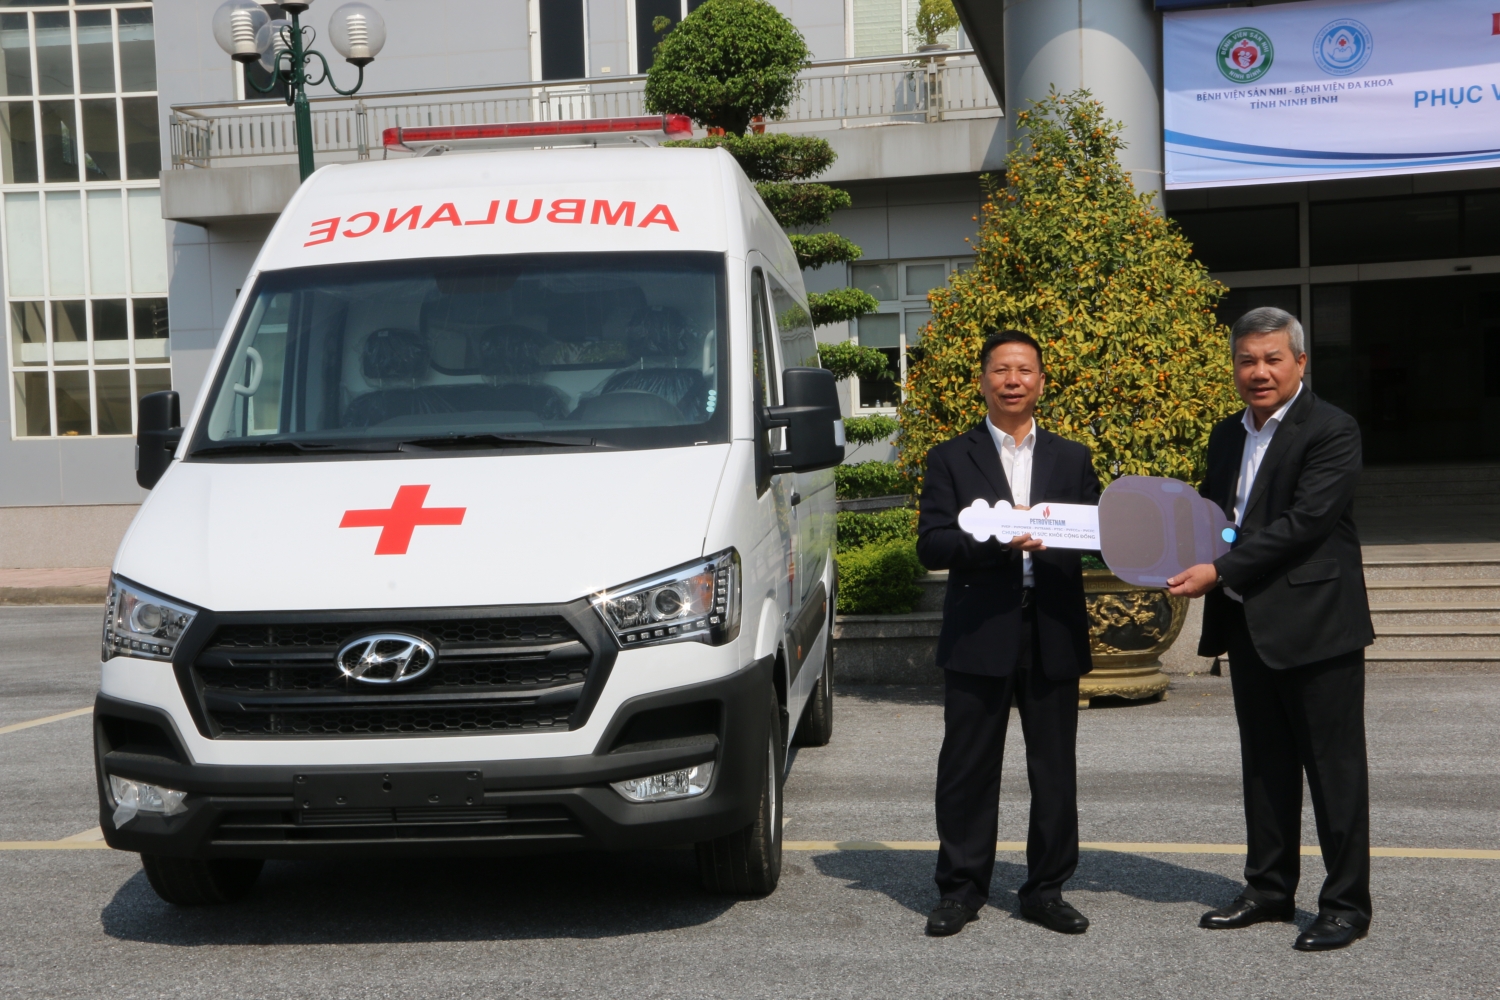 Petrovietnam trao tặng xe cứu thương cho 2 bệnh viện tỉnh Ninh Bình